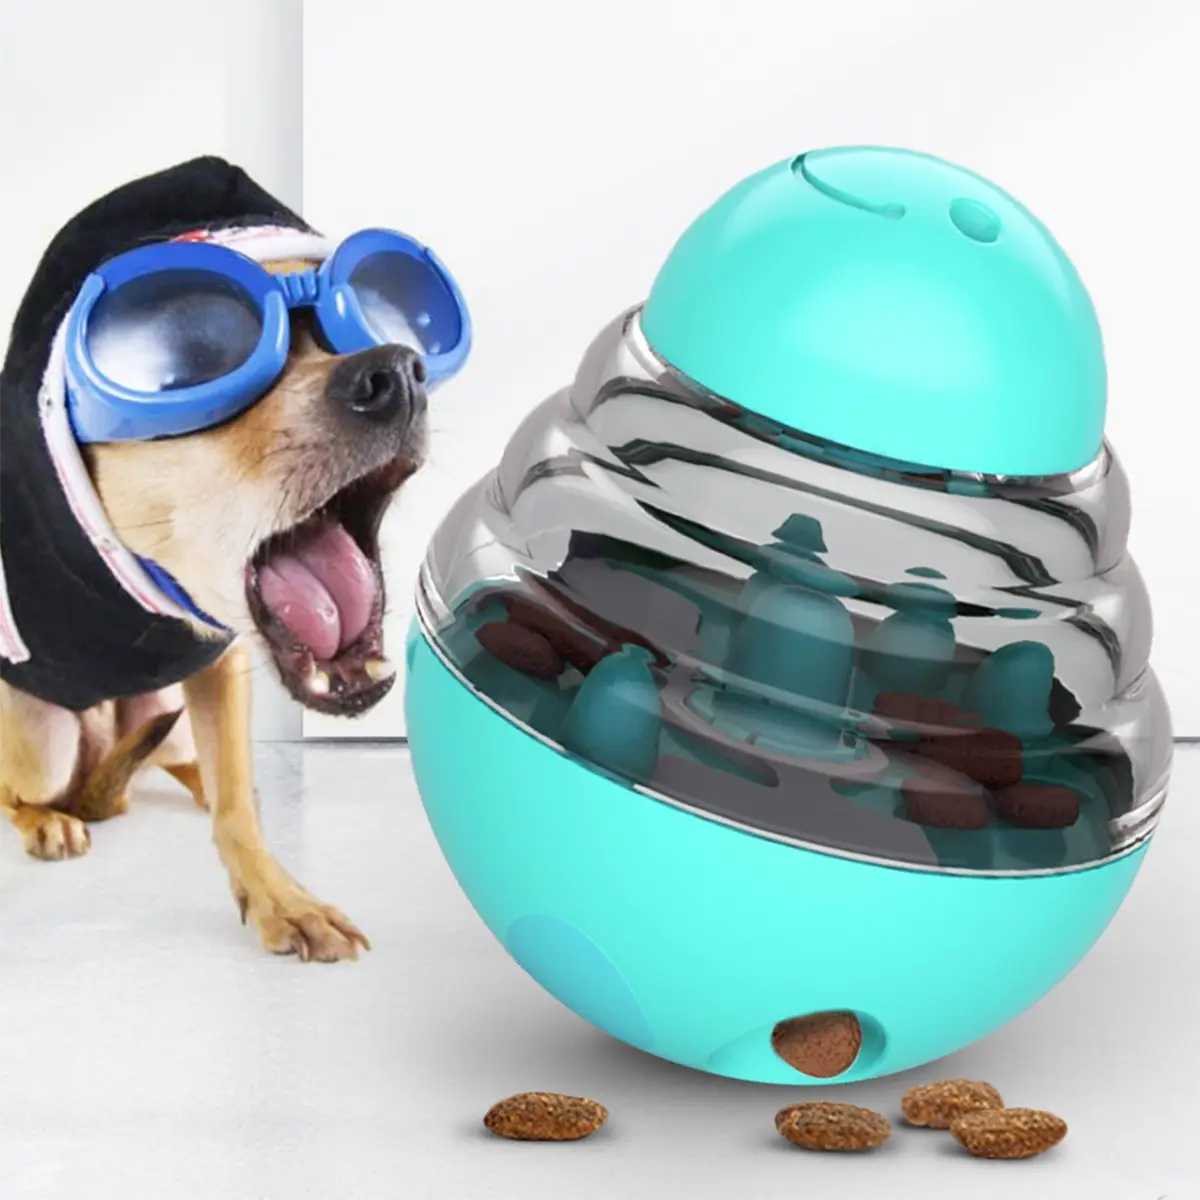 لعبة كرة هزازة مبيع بالجملة من الشركات المصنعة لعبة إطعام بهلوان لعلاج الحيوانات الأليفة ، لعبة كلب كرة طعام راشح للتدريب